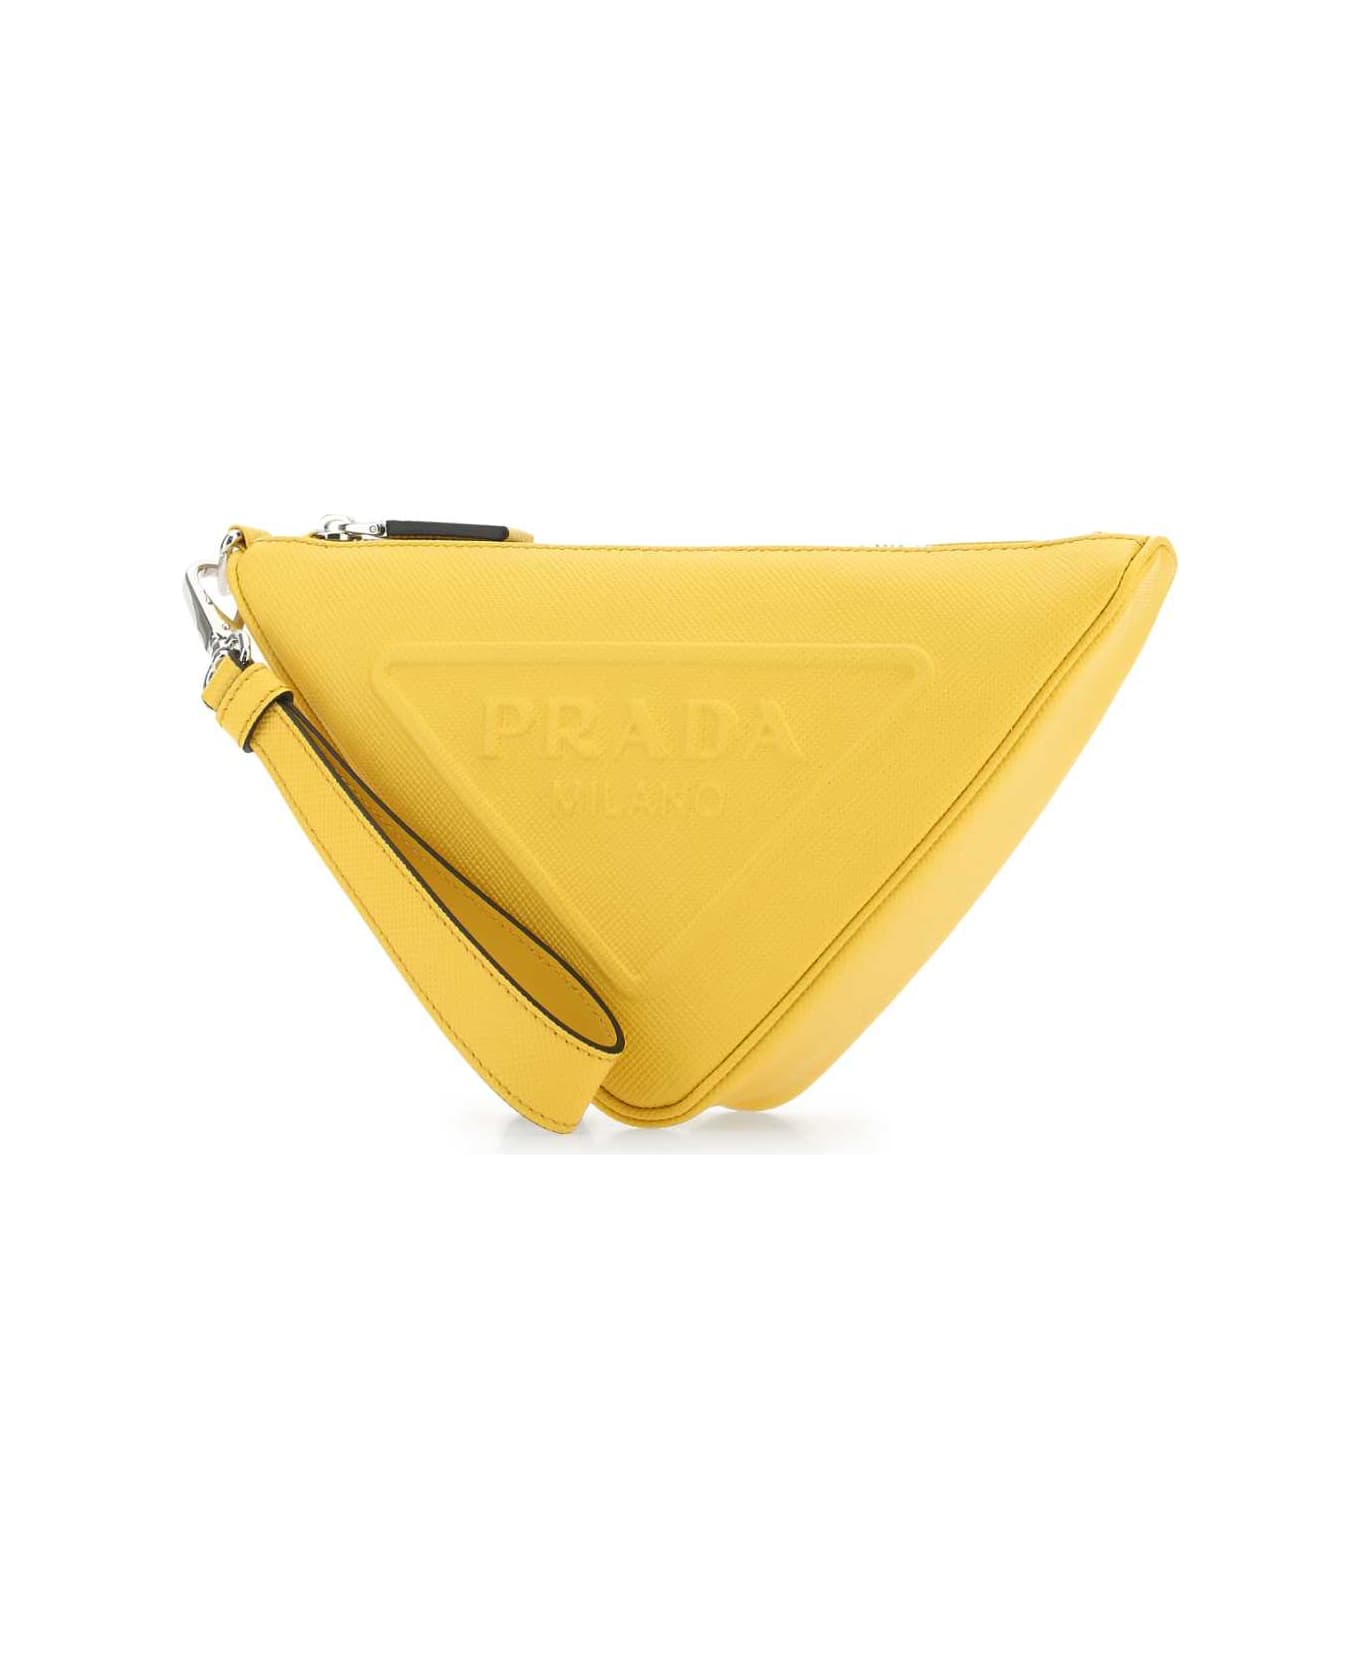 Prada Yellow Leather Triangle Clutch - F0377